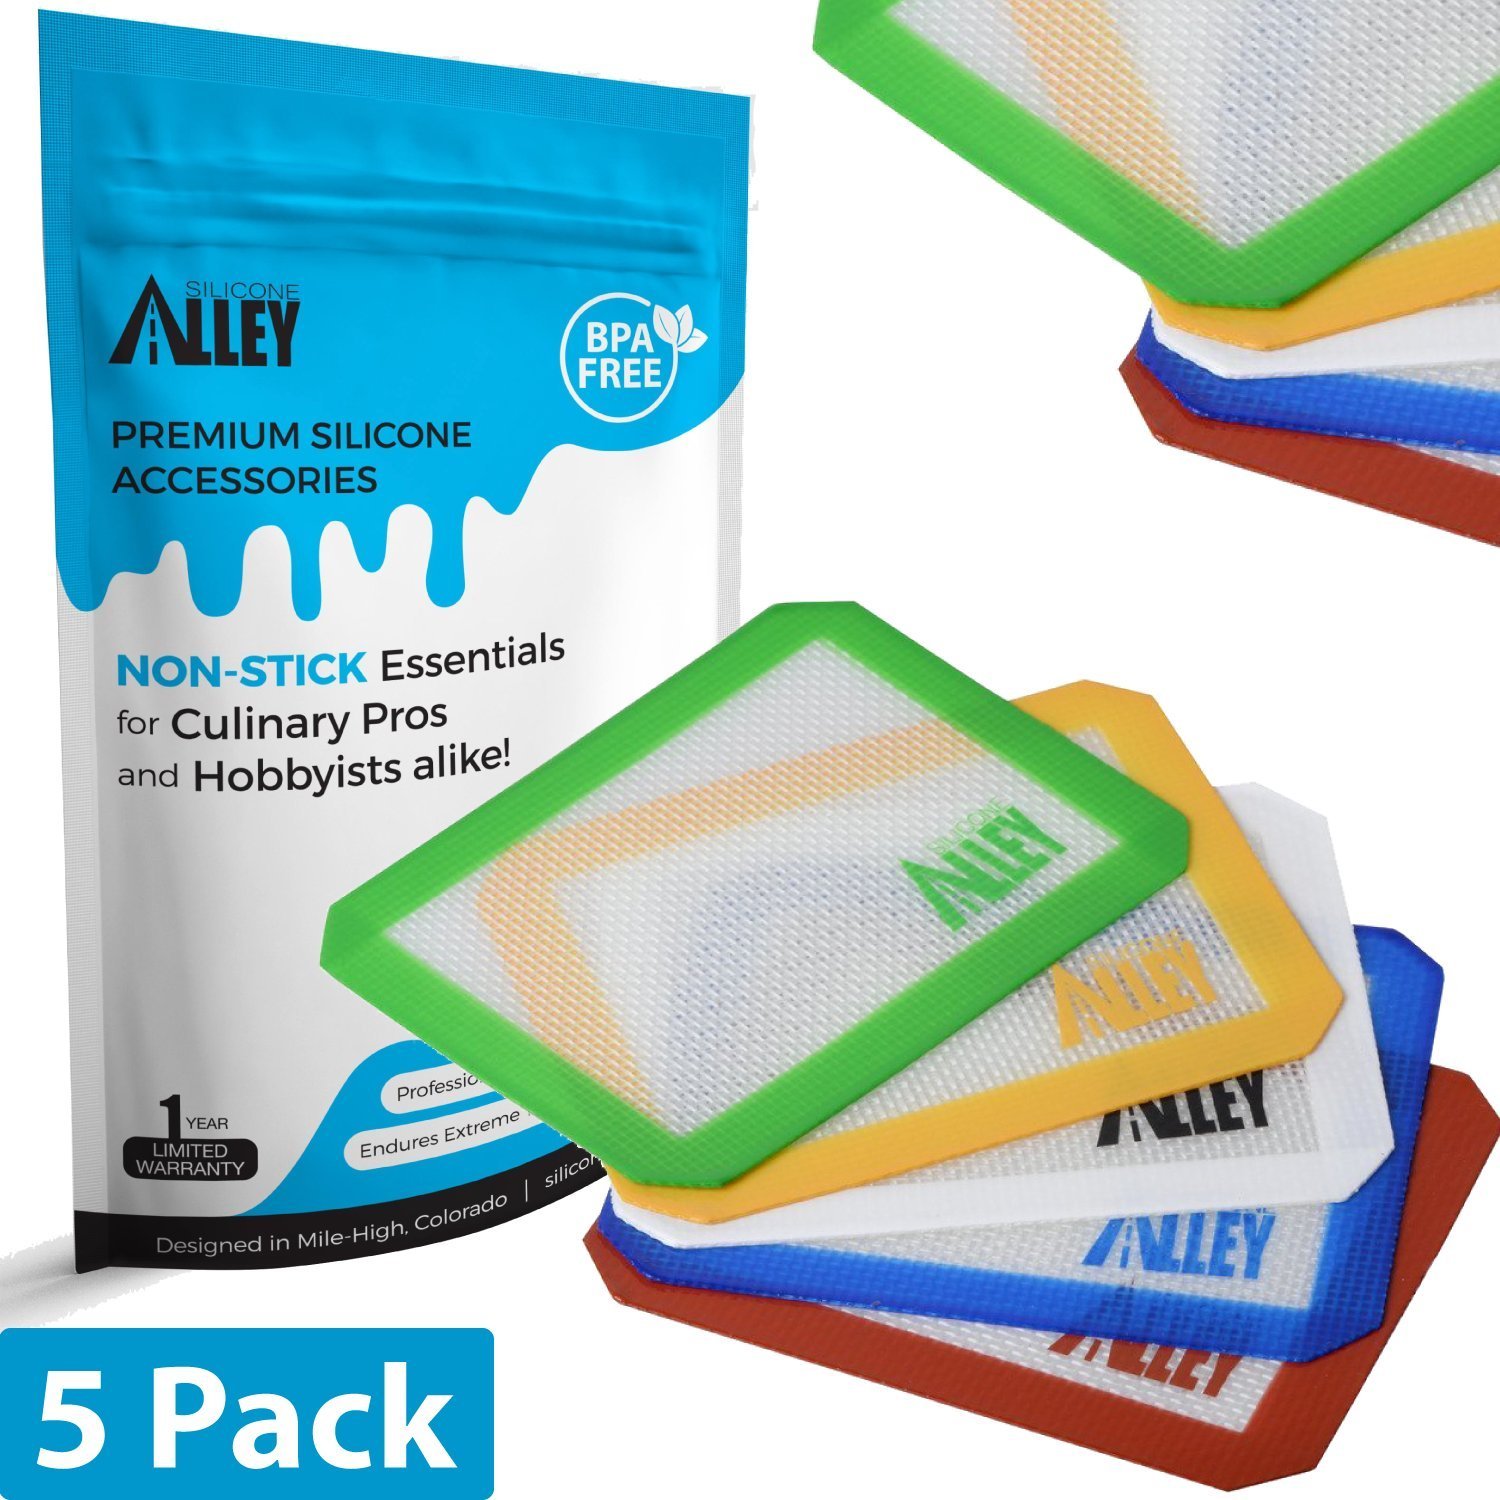 2 New small silicone non-stick mats pads 5" x4" New in package FDA Grade Teflon 